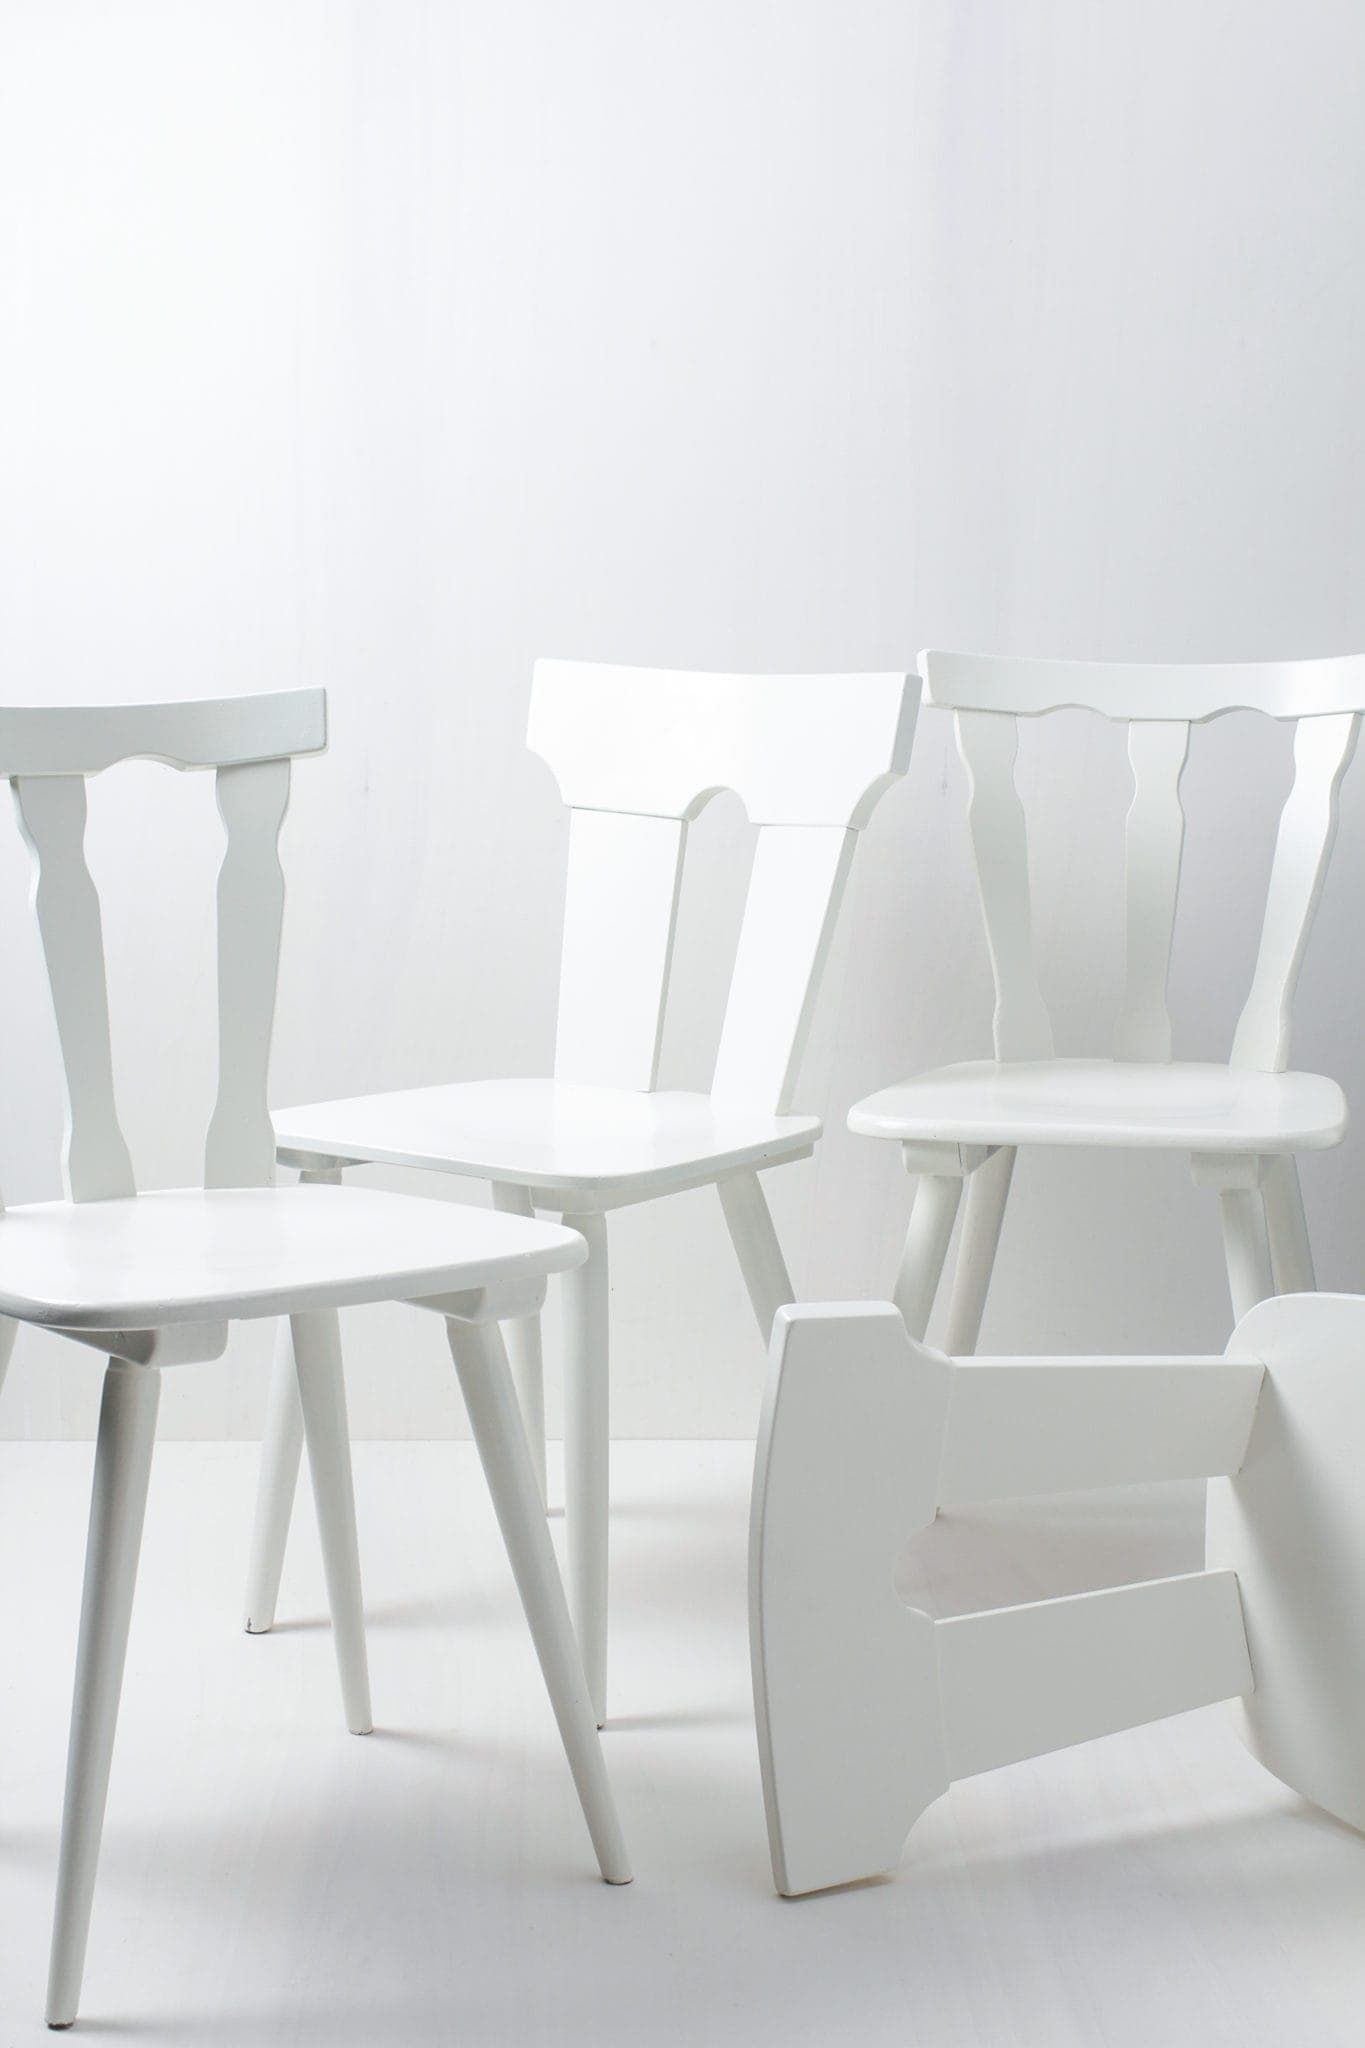 Diese vintage mismatching Holzstühle verschönern jede Tafel. Durch ihre individuellen Formen und Designs ergibt sich ein einmaliges aber stimmiges Bild auf ihrem Fest, der Hochzeit oder auf ihrem Event. Die Stühle sind in weiß seidenmatt lackiert.